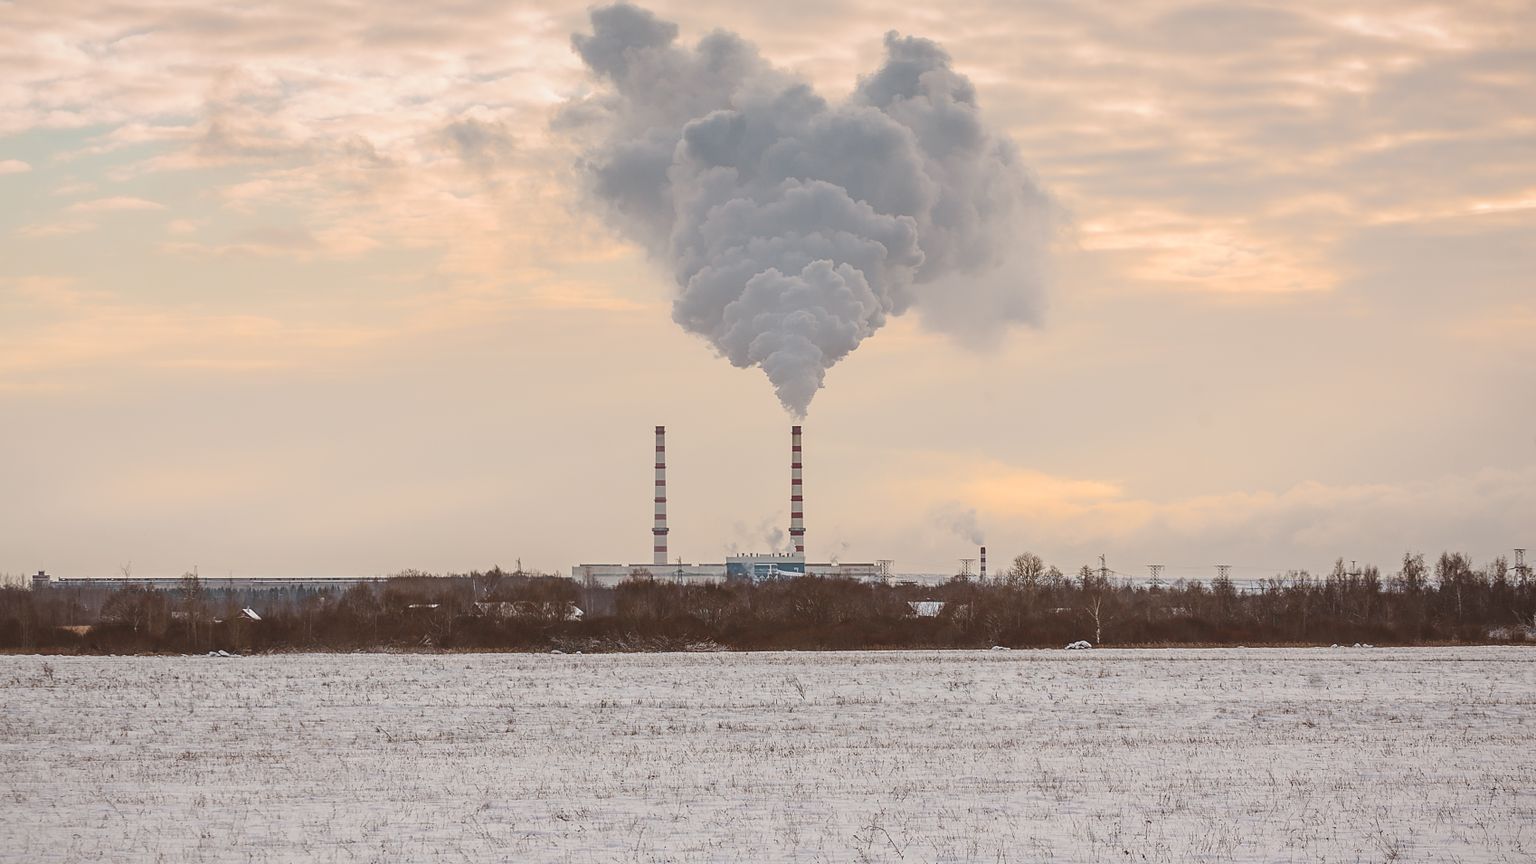 Тепло для Нарвы вырабатывается на Балтийской электростанции и расположенной рядом с ней газовой котельной.